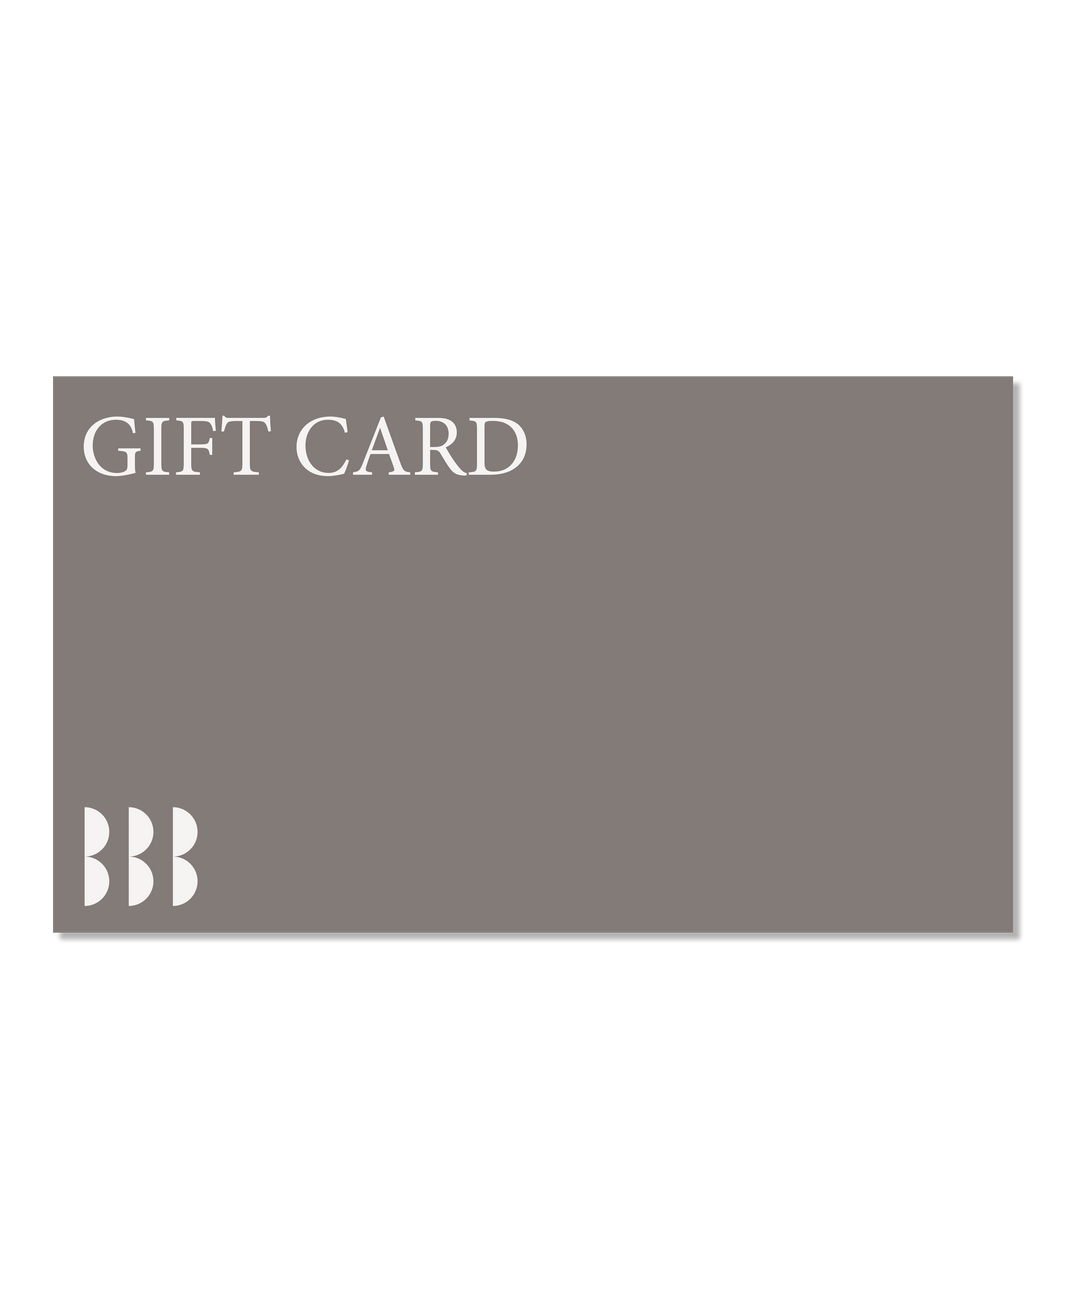 BBBLondon Gift Card